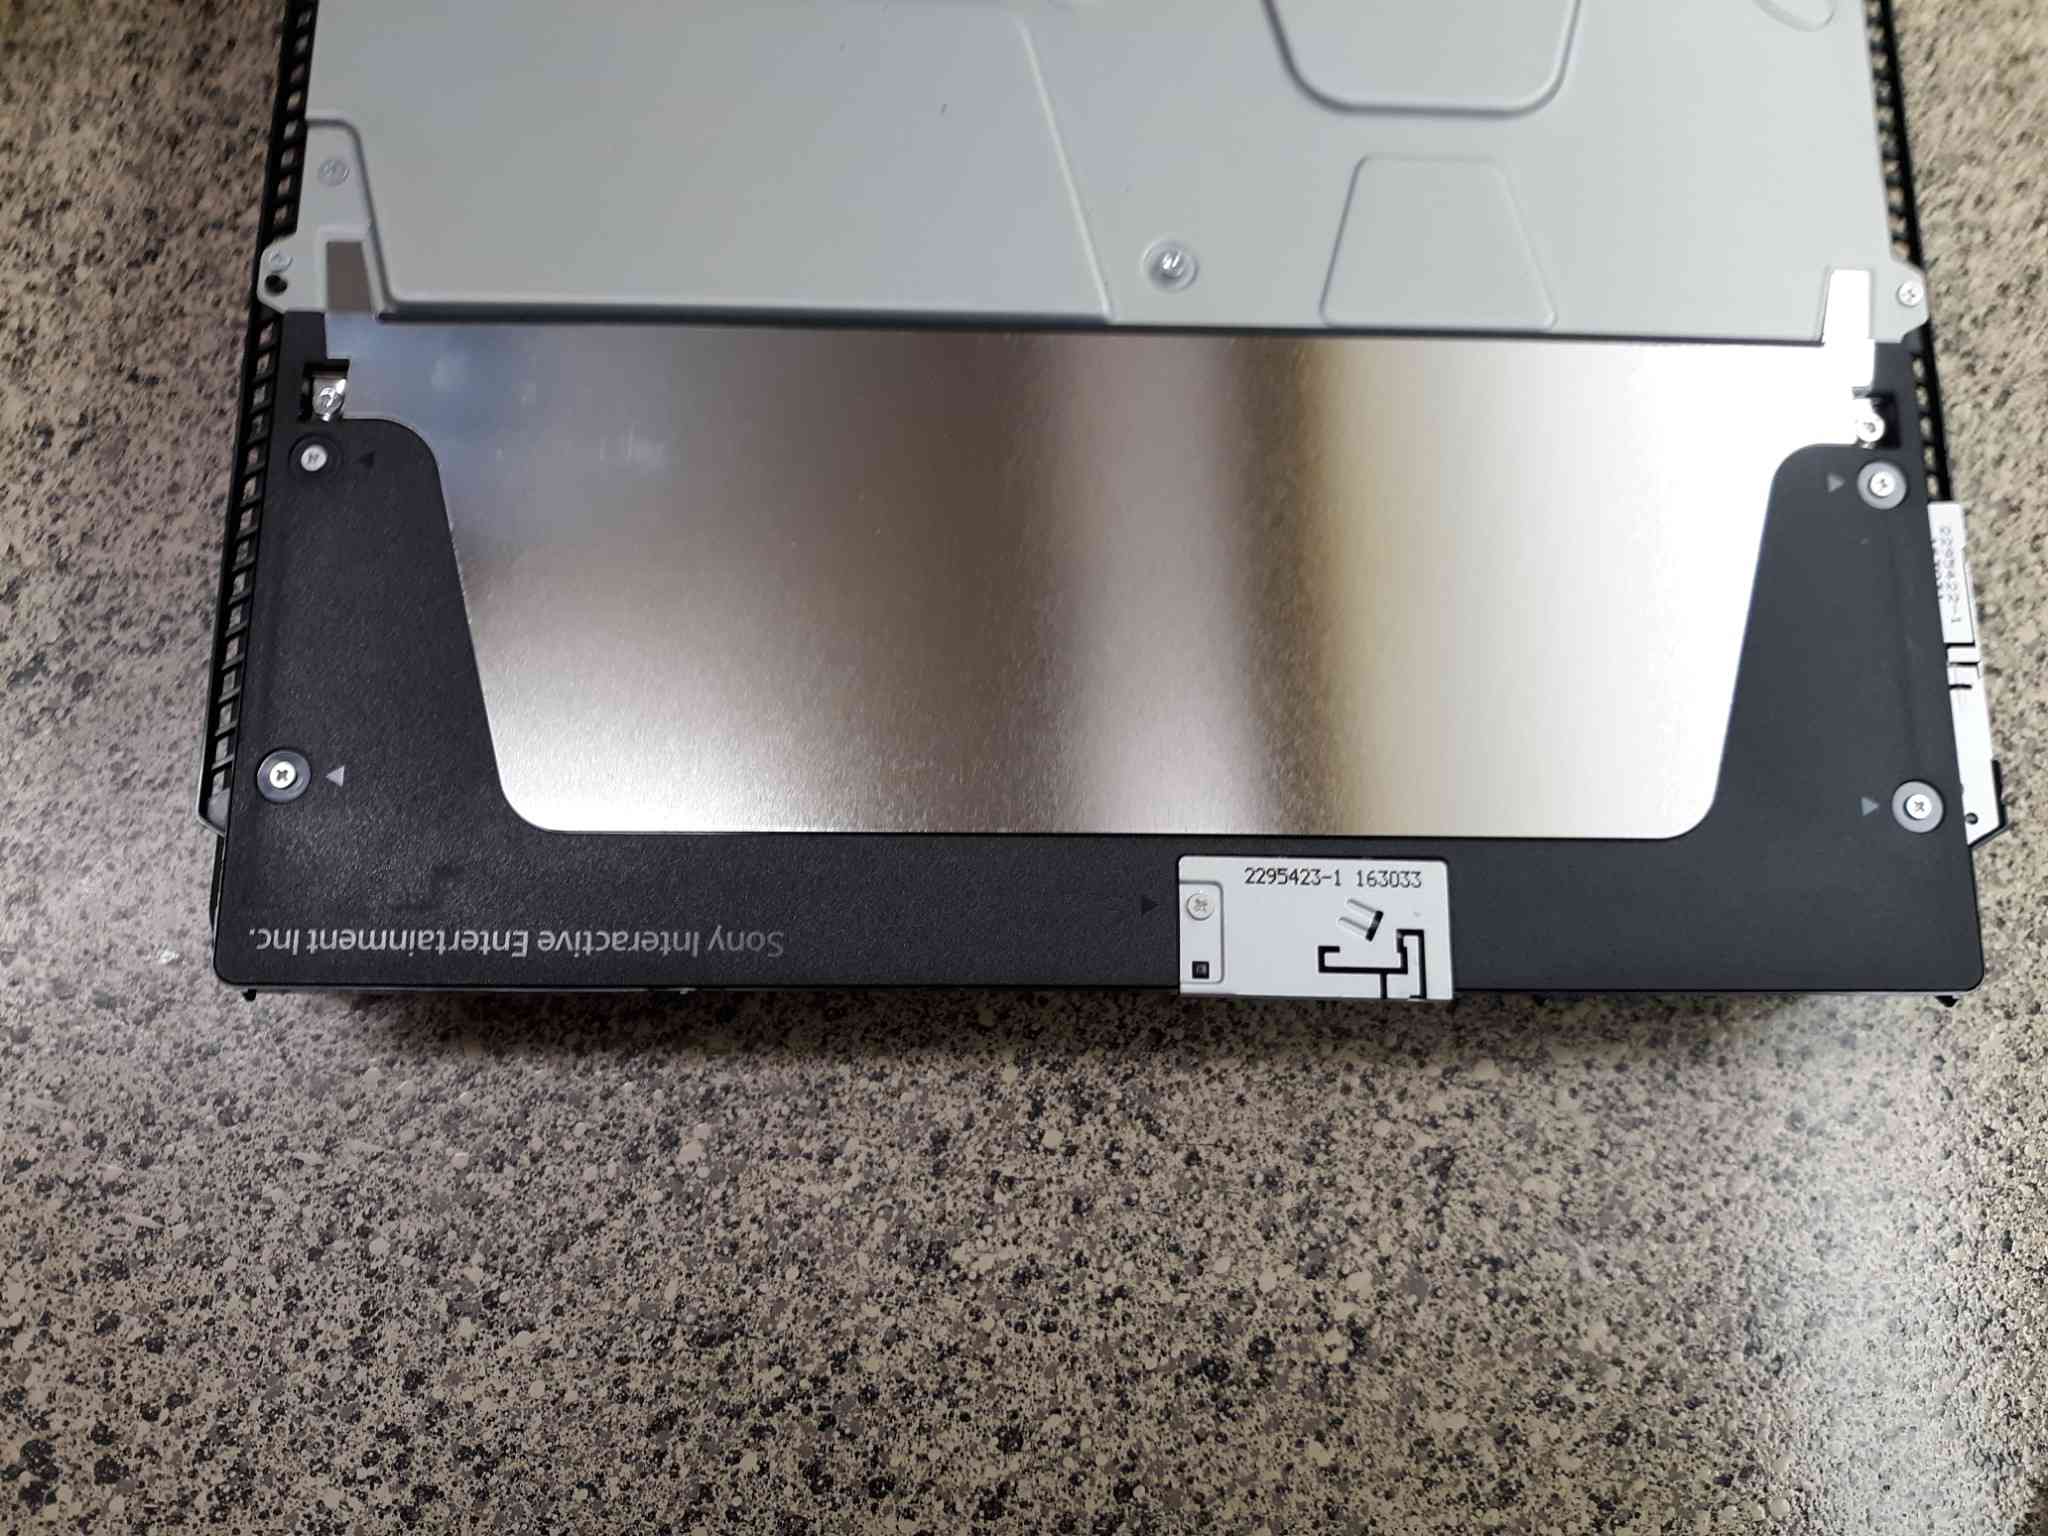 Pomocí křížového šroubováku odstraňte černý plastový kryt poblíž zadního konce konzoly PS4.